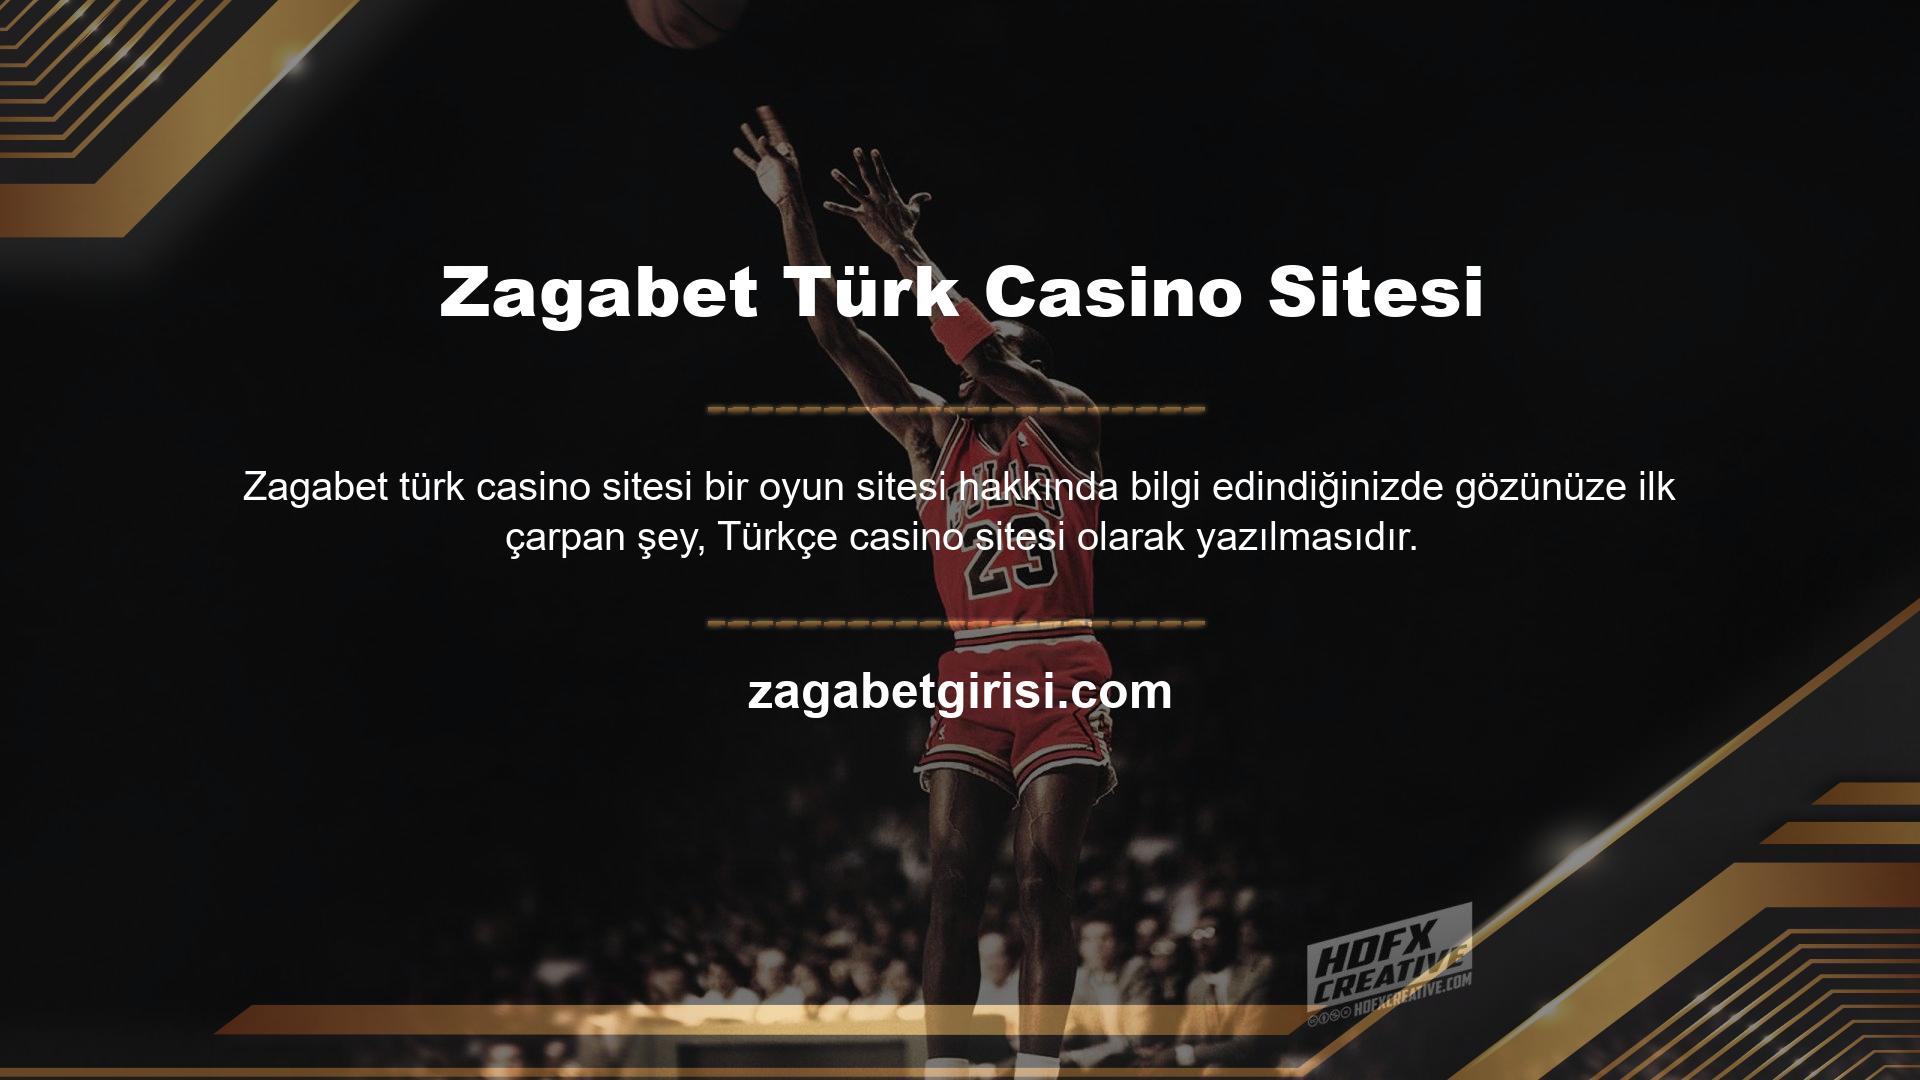 Bu siteye bakarsanız, Türkiye merkezli bir şirketin casino sitesini göreceksiniz